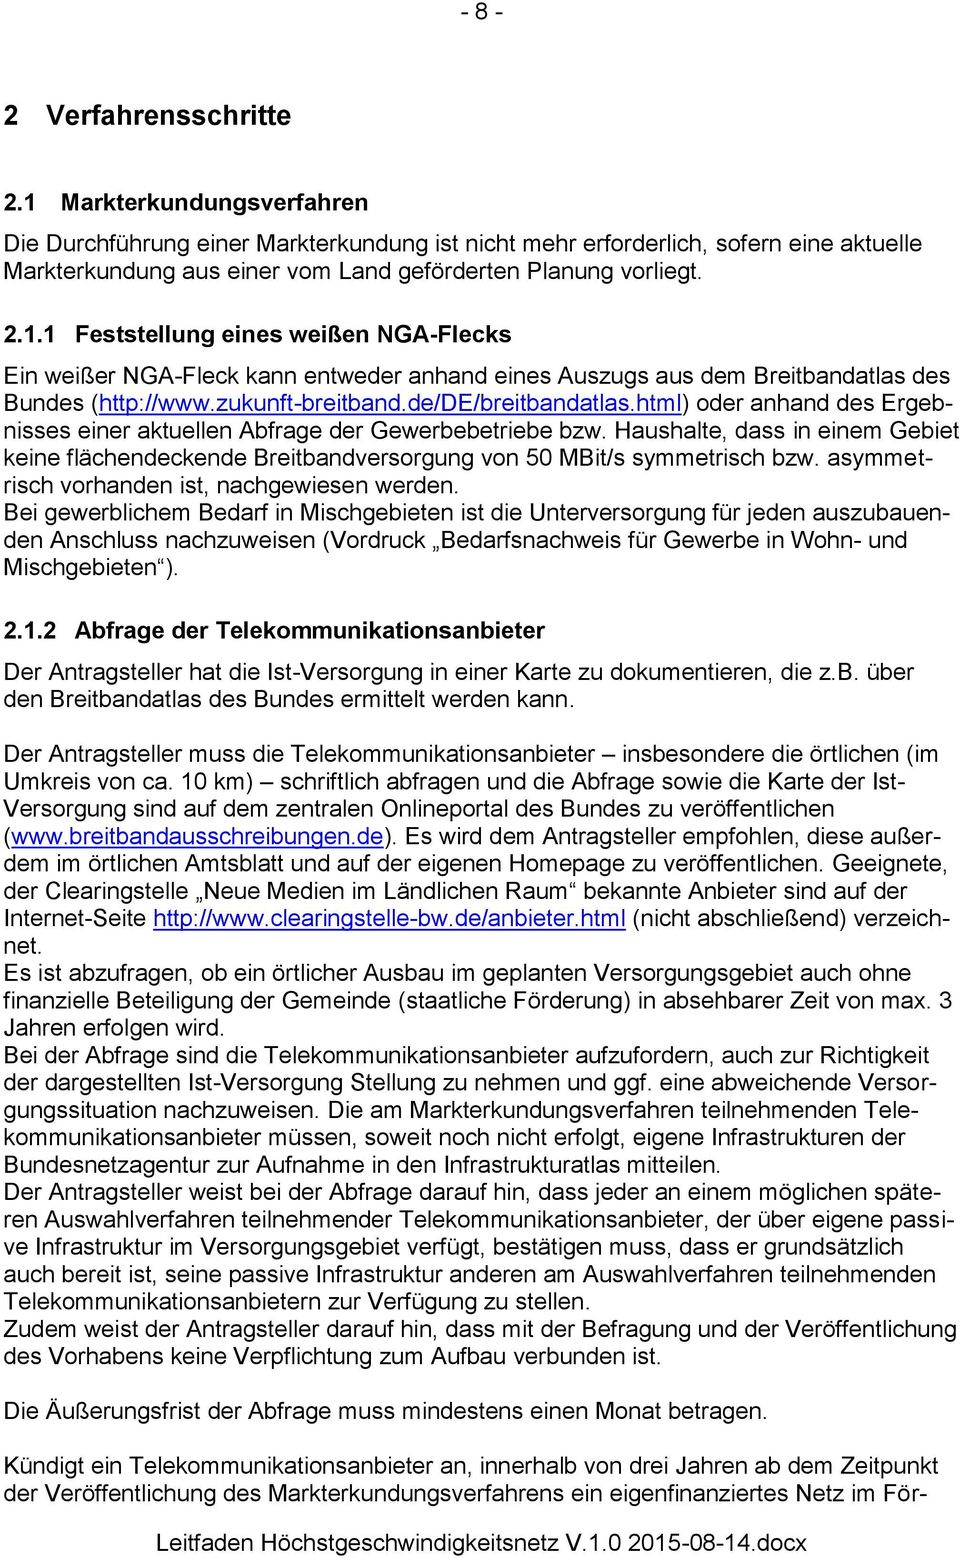 zukunft-breitband.de/de/breitbandatlas.html) oder anhand des Ergebnisses einer aktuellen Abfrage der Gewerbebetriebe bzw.